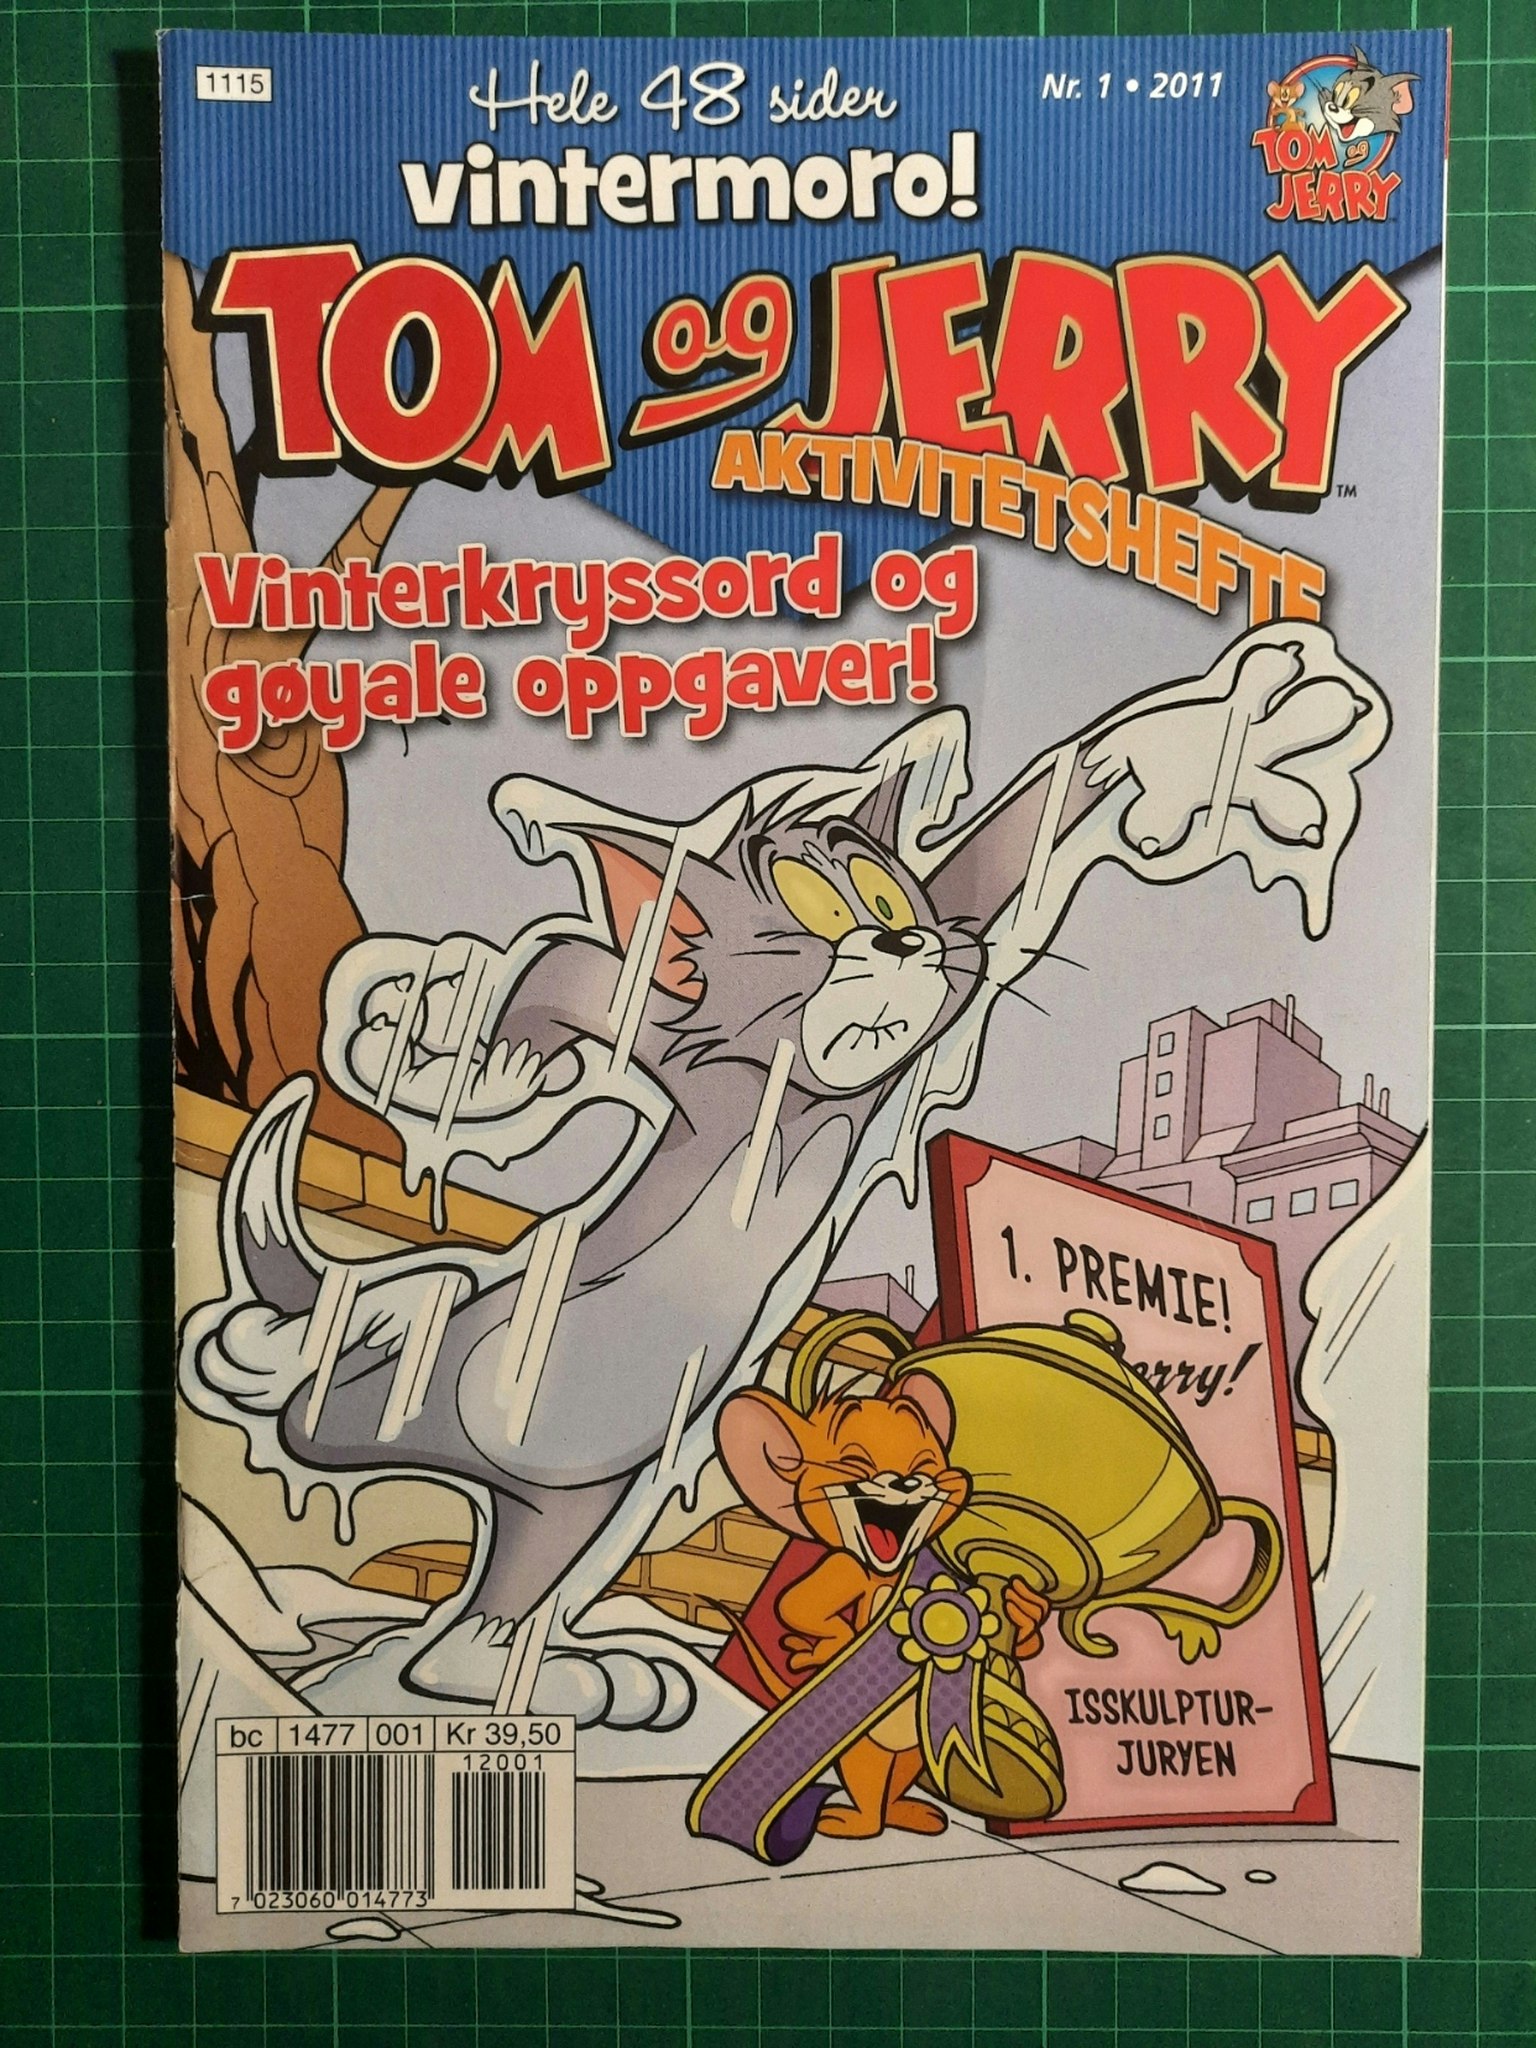 Tom og Jerry aktivitetshefte 2011 - 01